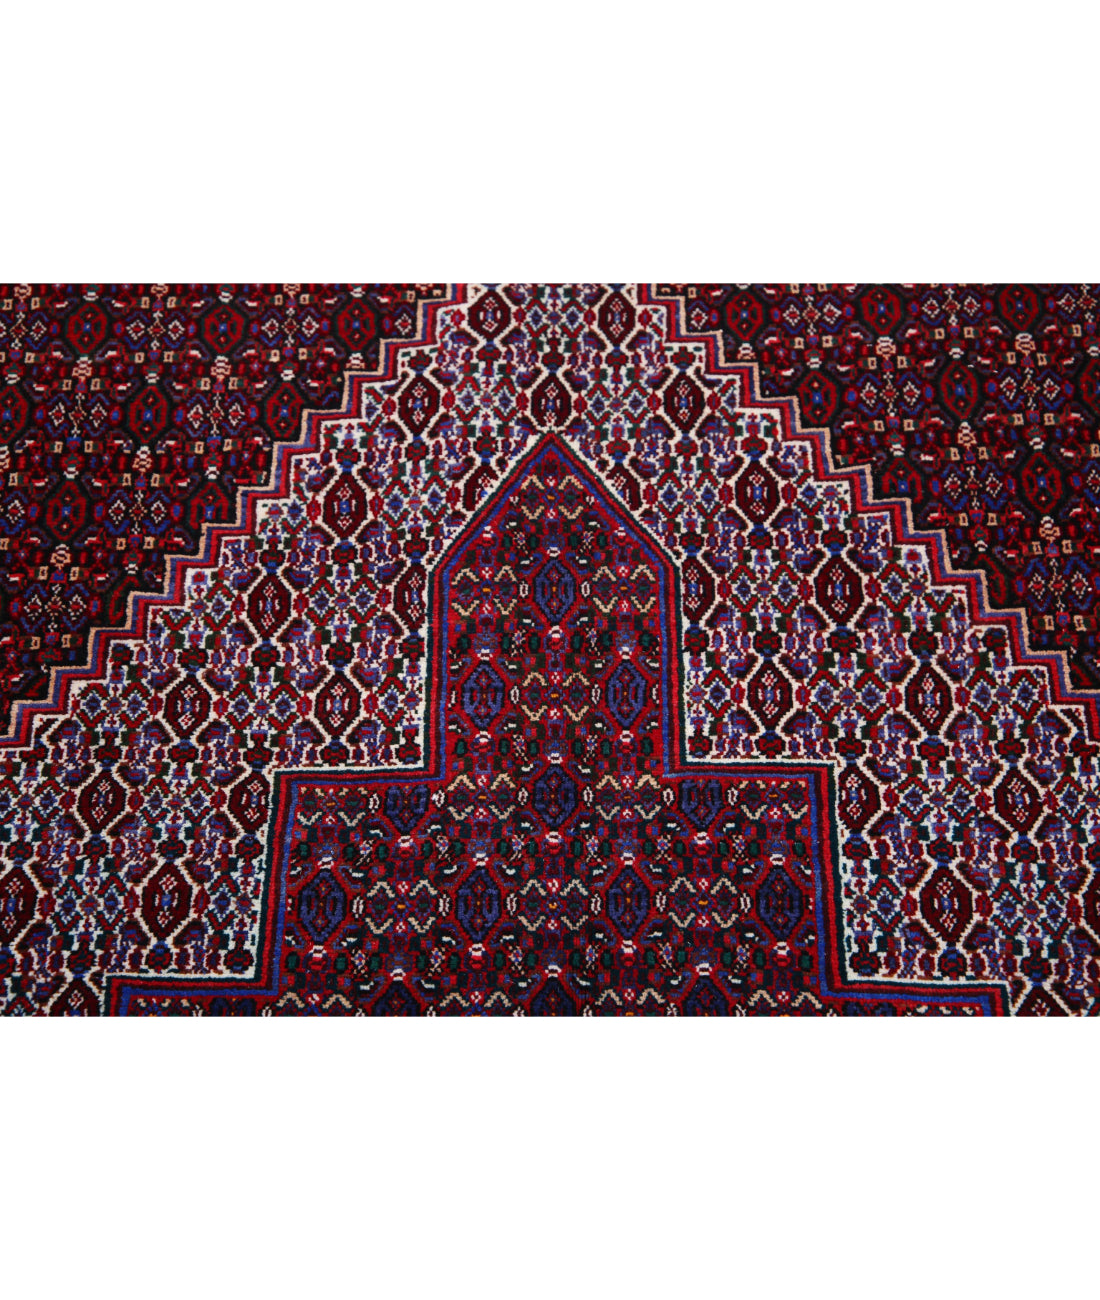 Hand Knotted Persian Bijar Wool Rug - 6'8'' x 10'11'' 6'8'' x 10'11'' (200 X 328) / Blue / Red